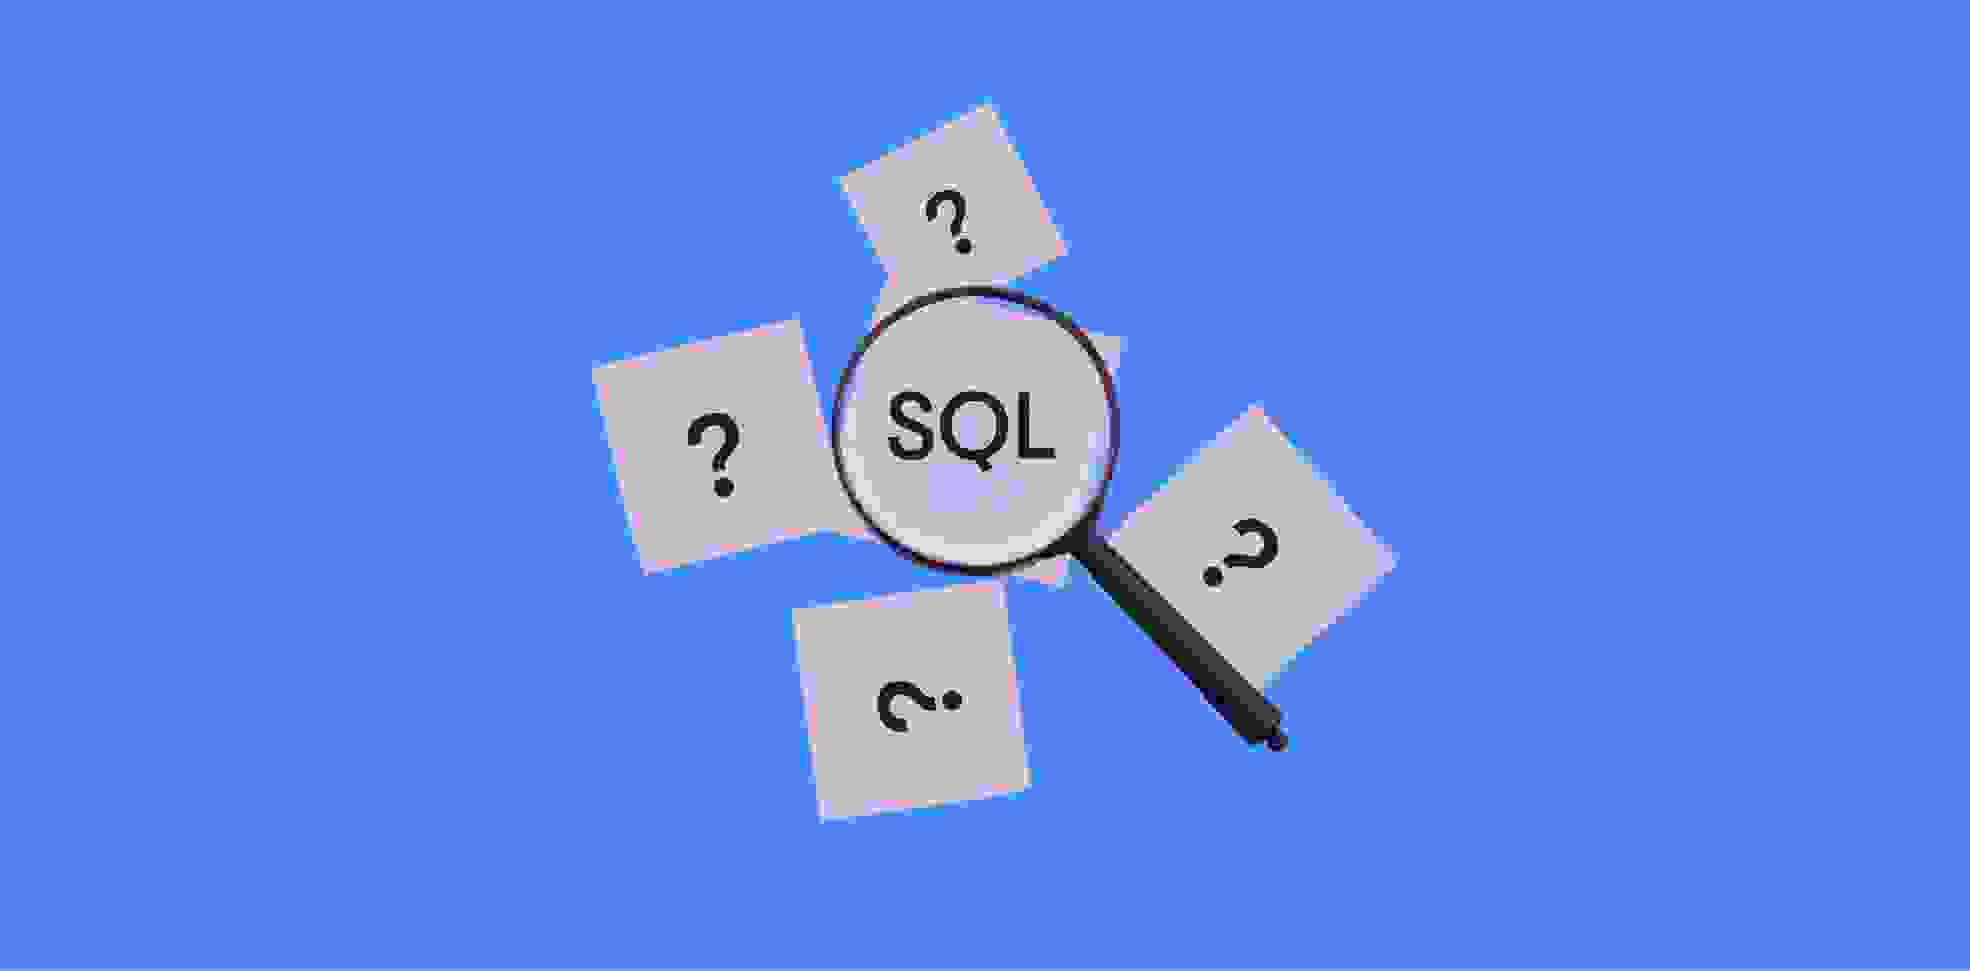 tarjetas con símbolos de preguntas y SQL bajo una lupa